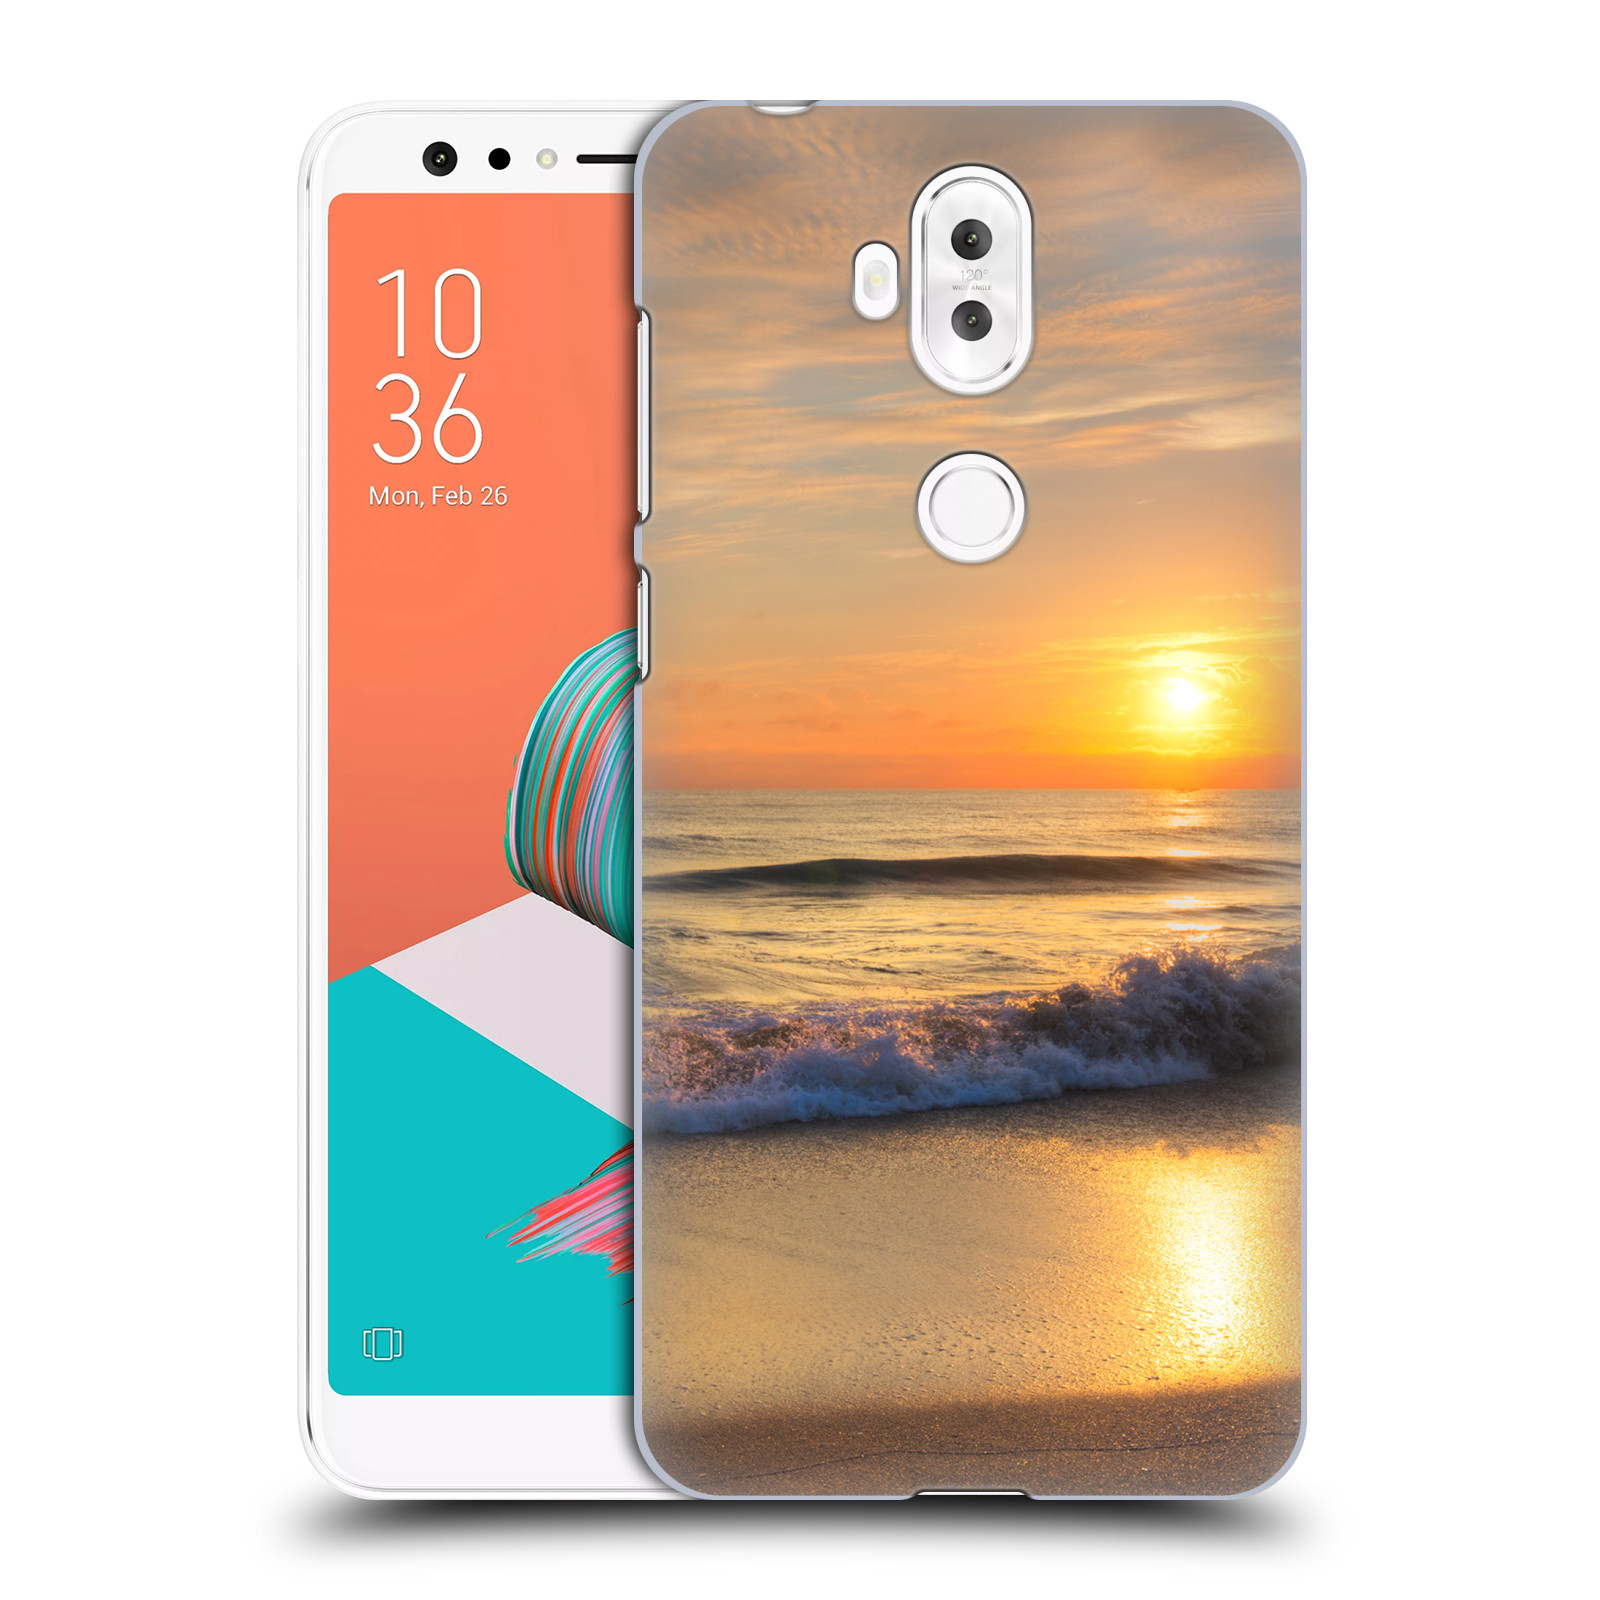 Zadní obal pro mobil Asus Zenfone 5 Lite ZC600KL - HEAD CASE - Krásy přirody - Nádherná pláž